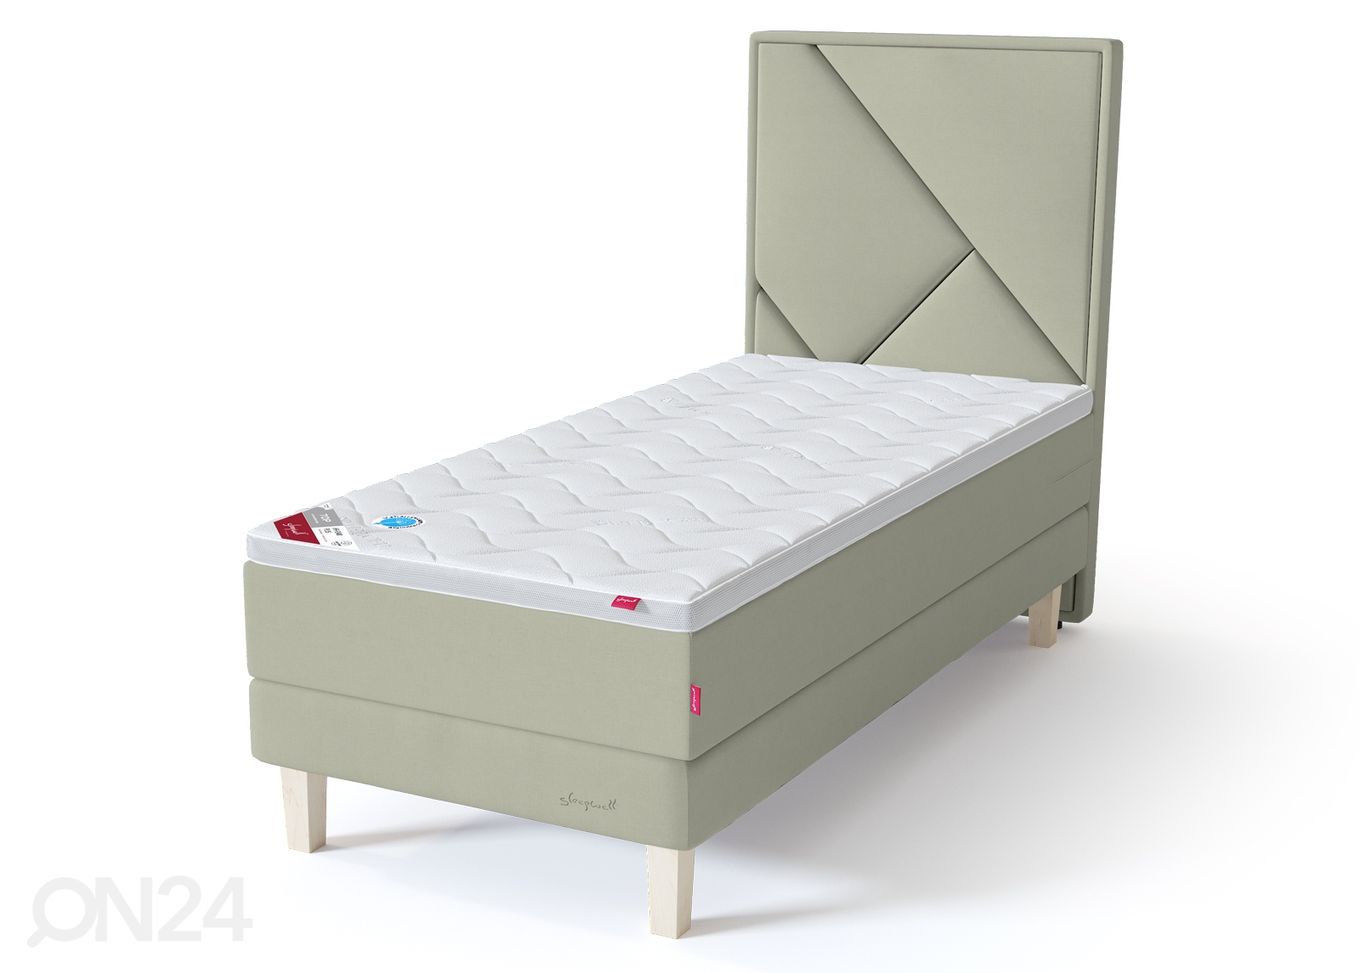 Sleepwell Red континентальная кровать на раме 140x200 cm мягкая увеличить